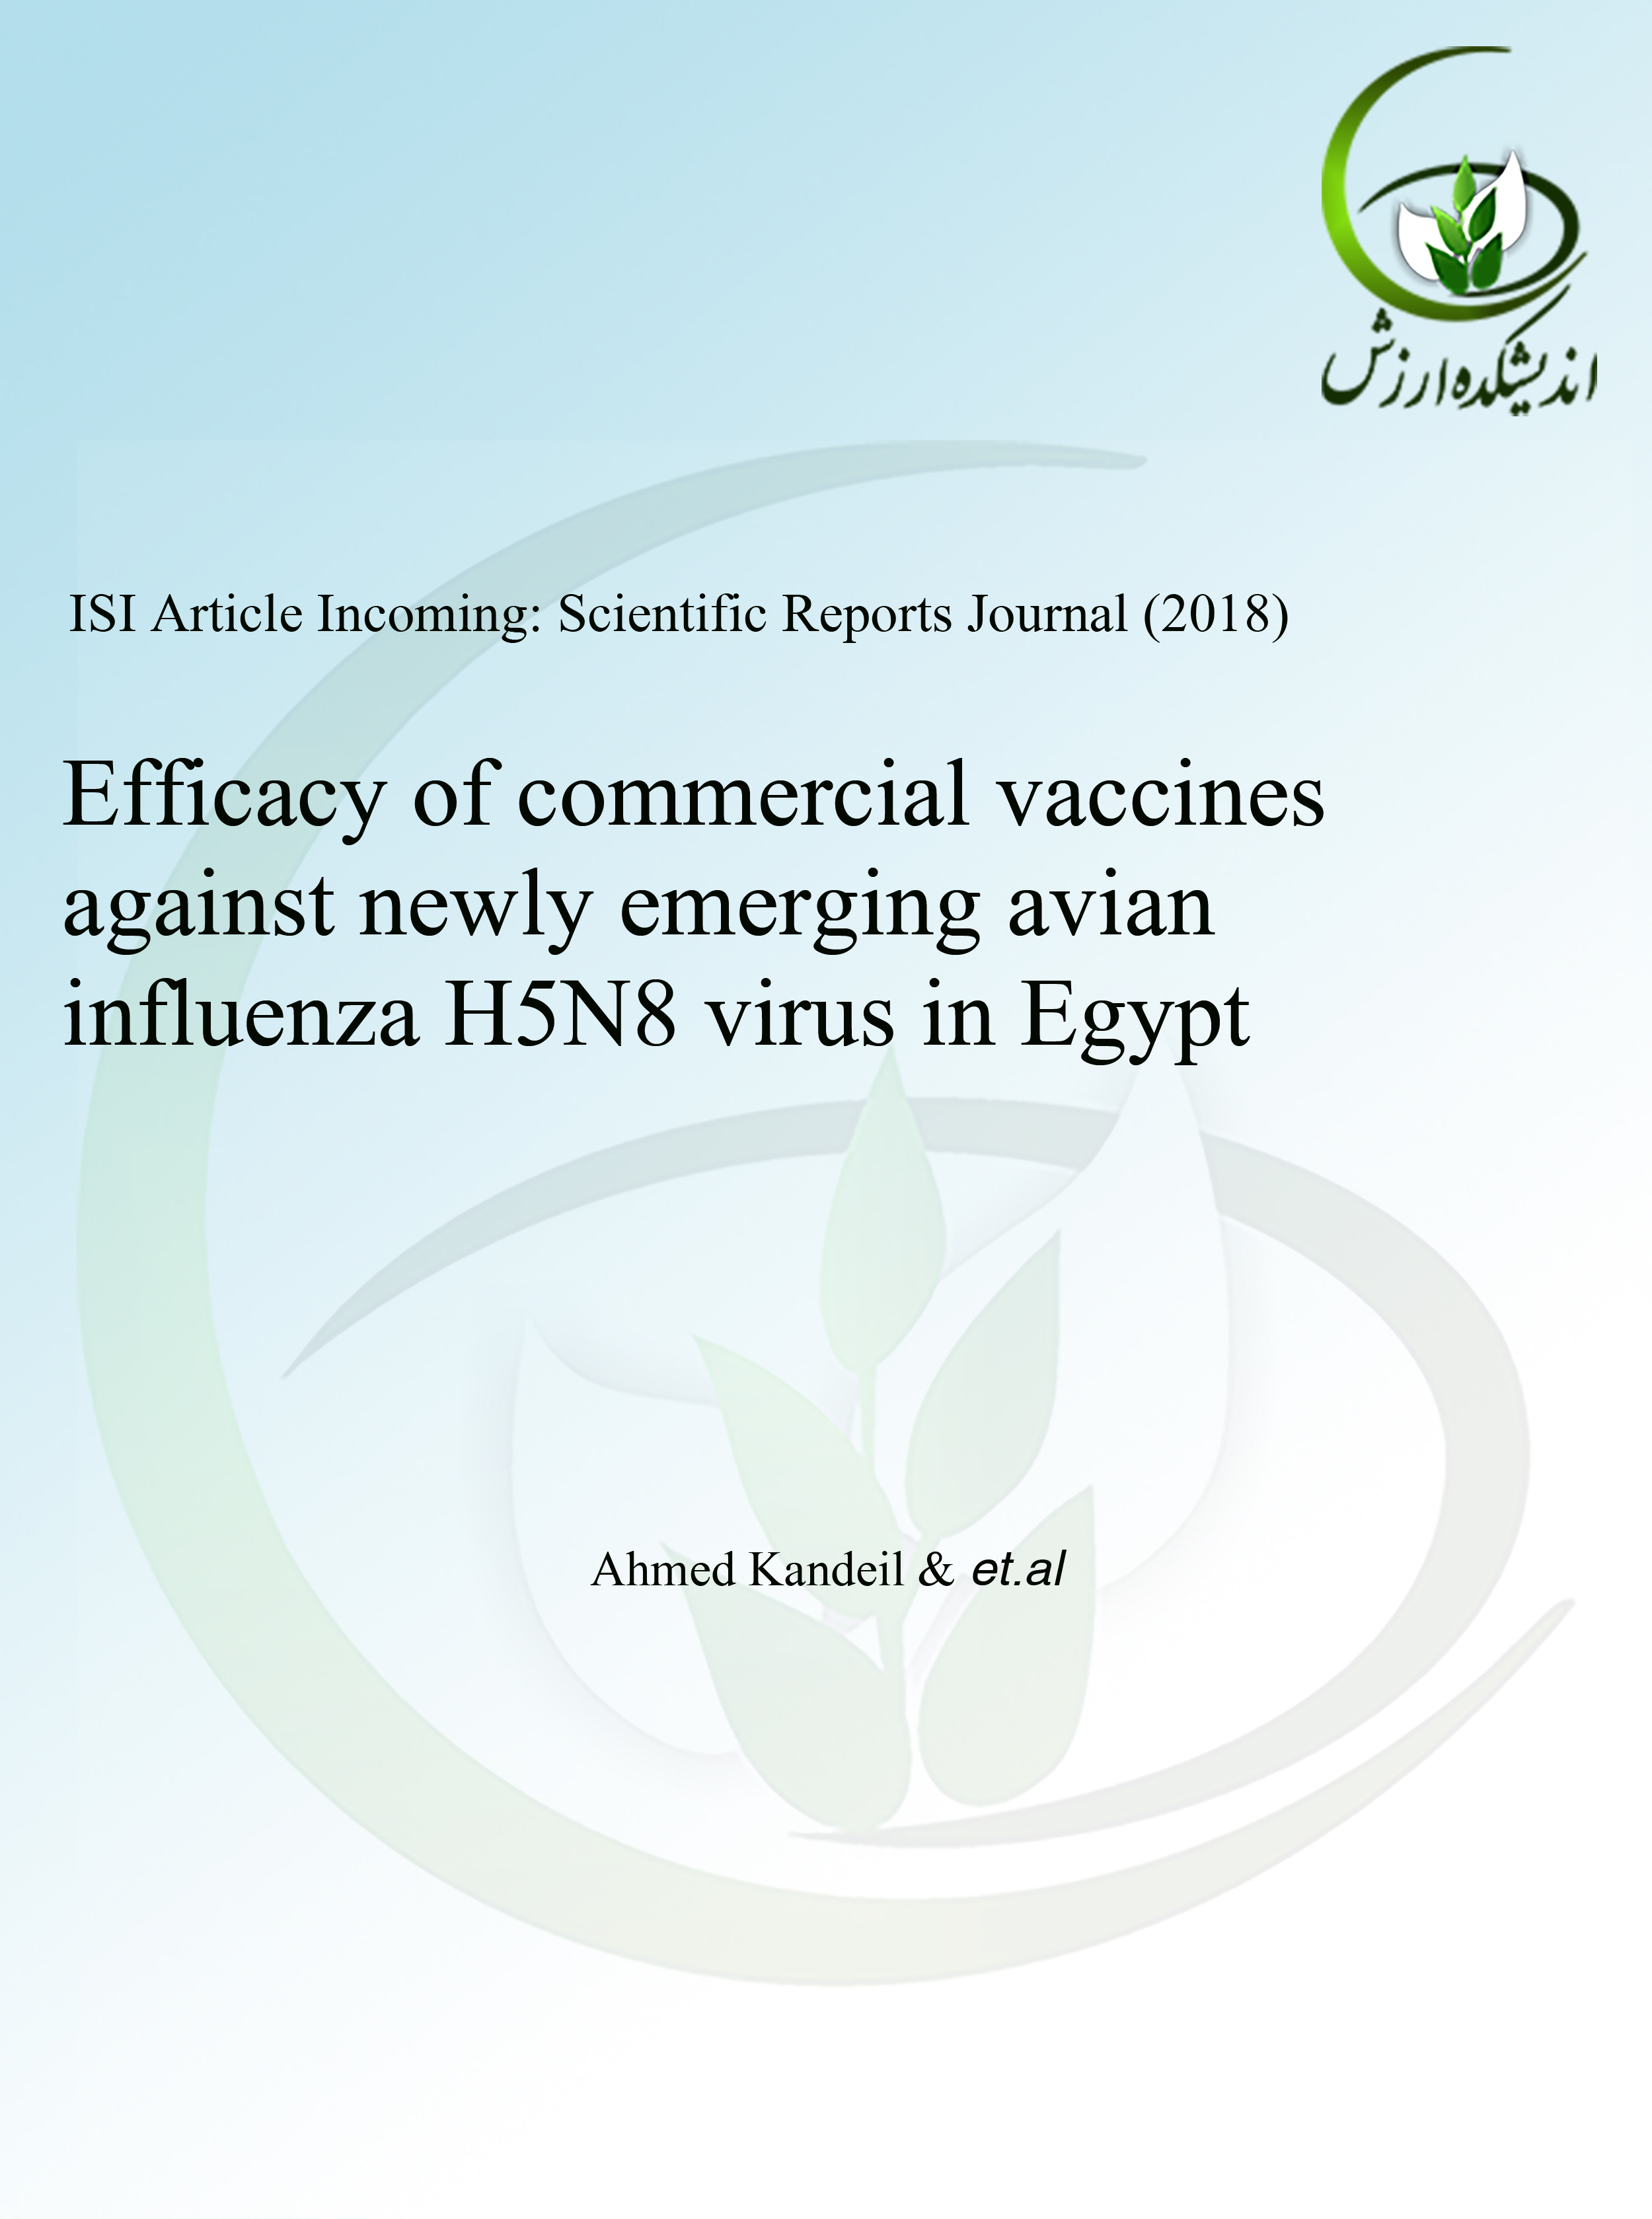 کارایی واکسن‌های تجاری در مقابله با ویروس H5N8 در مصر